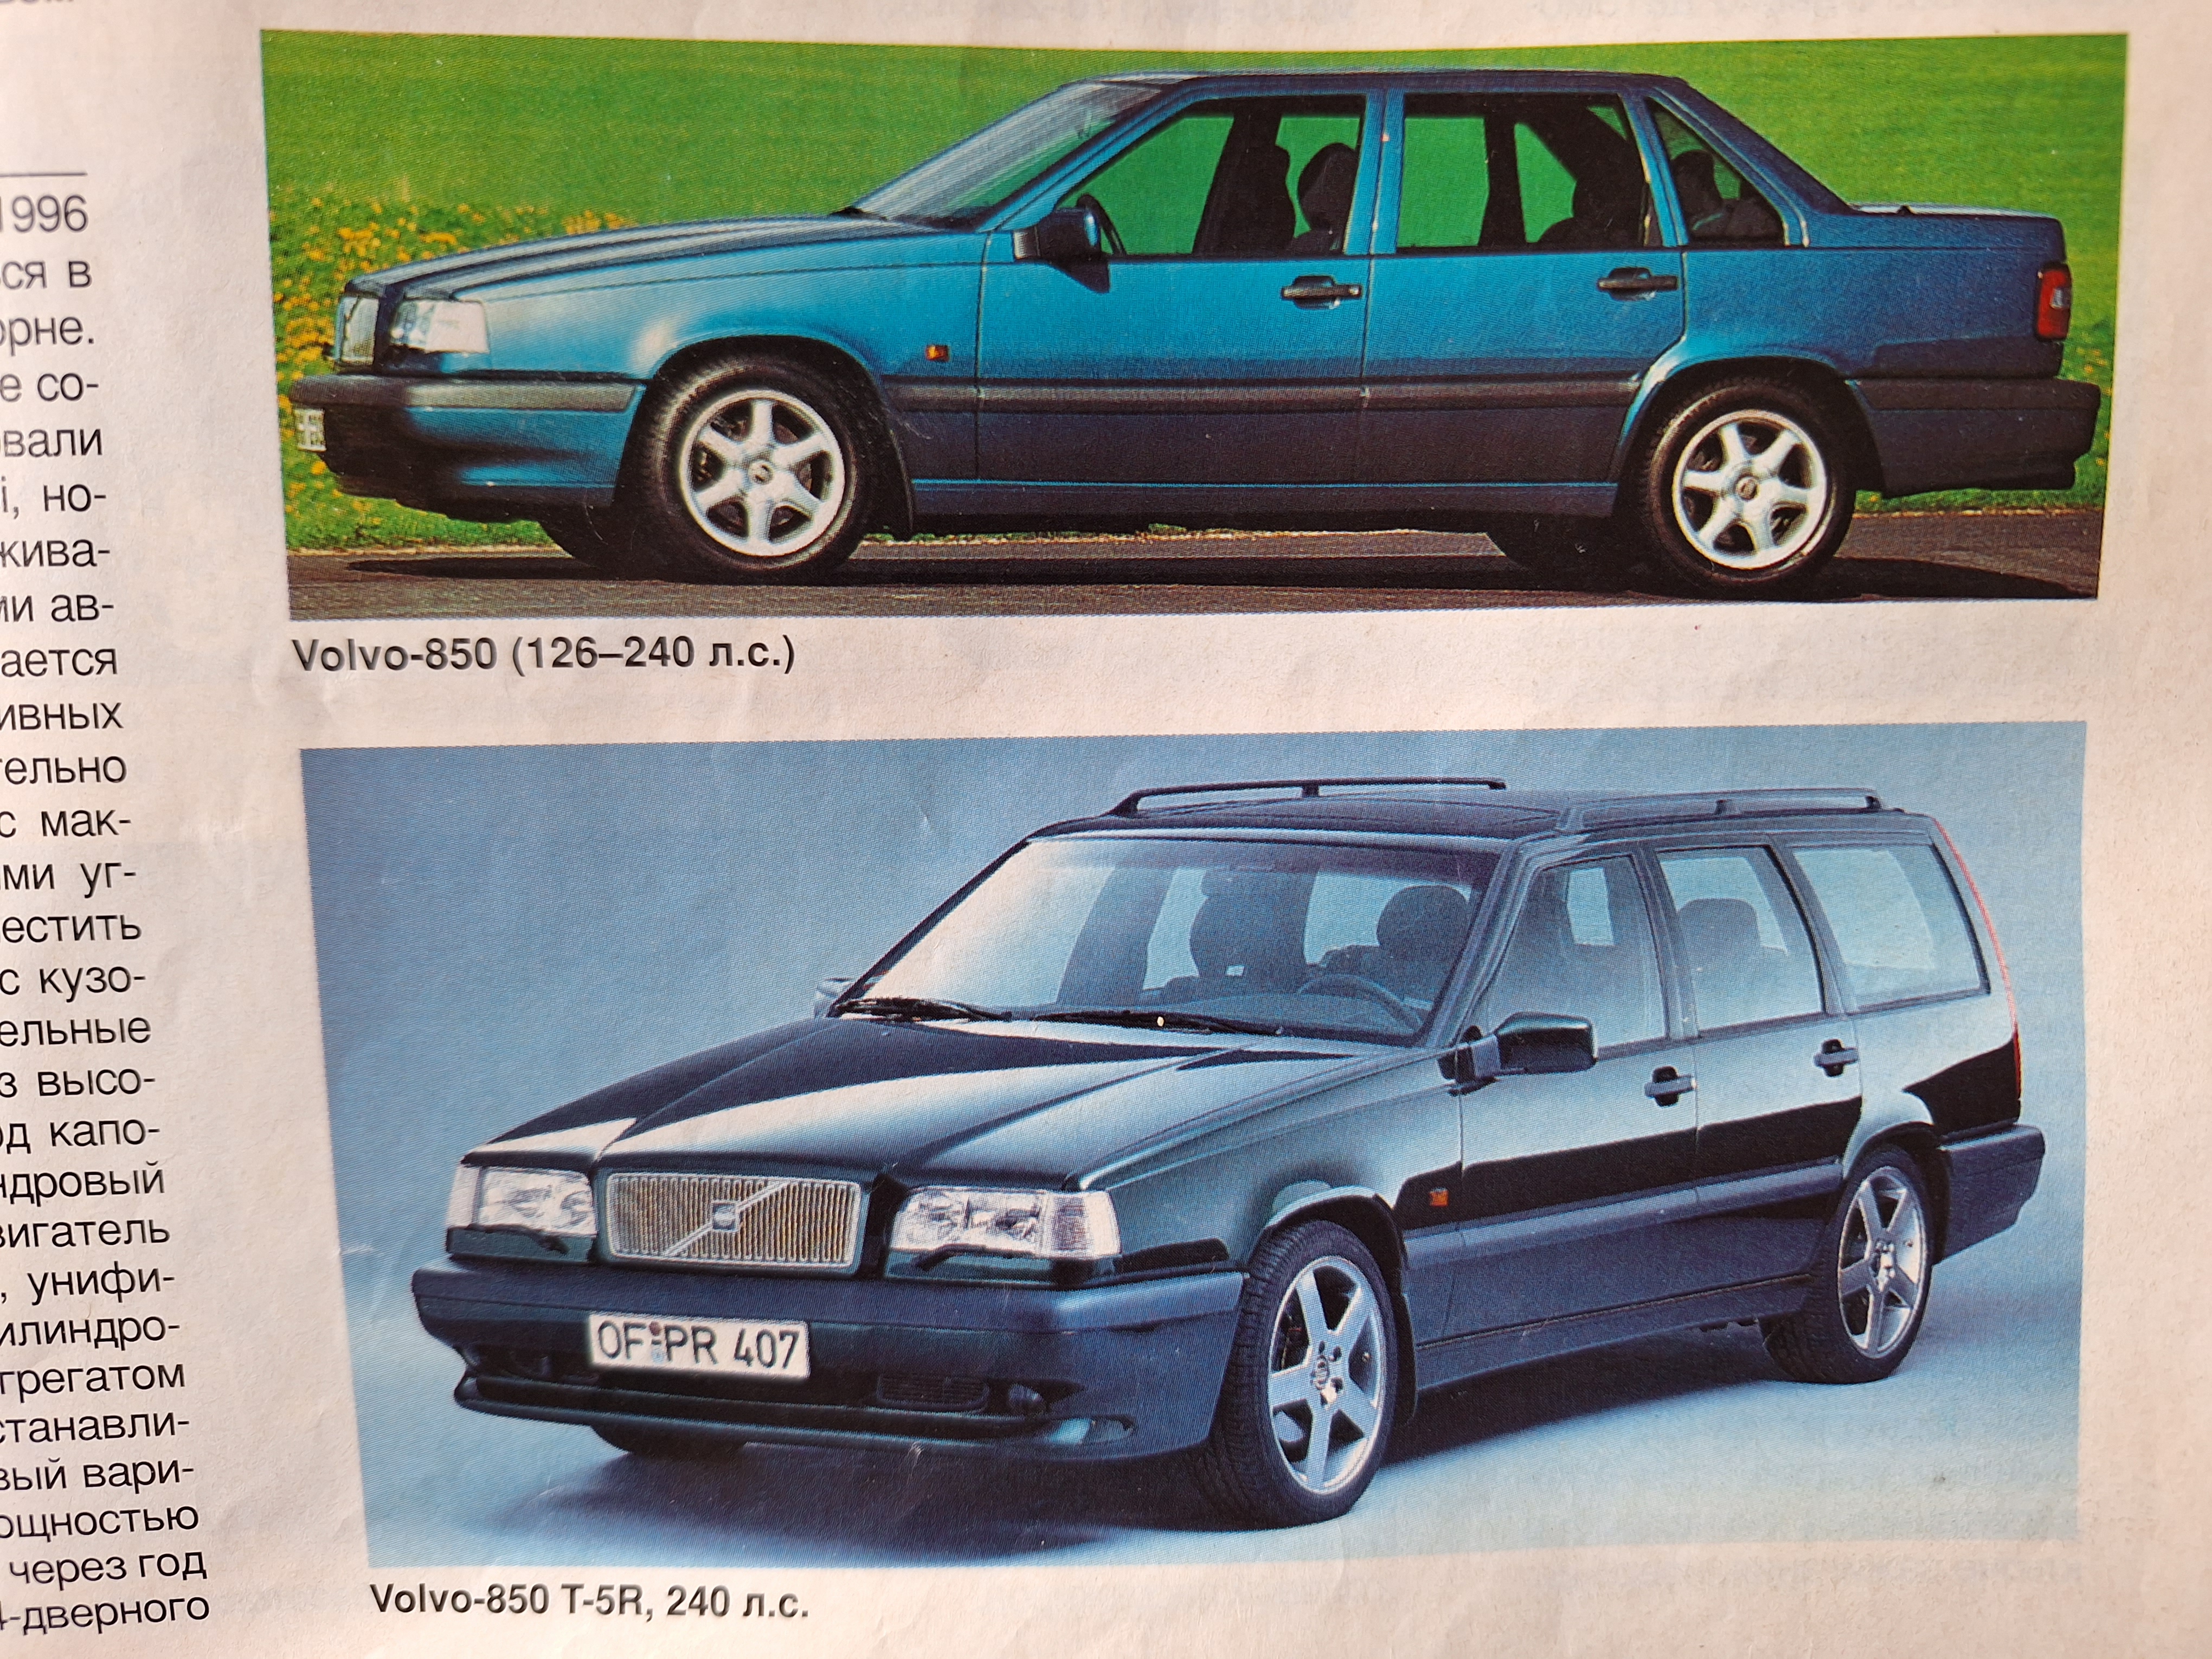 НЕФОРМАТ: Как писали о Volvo в 1996 году